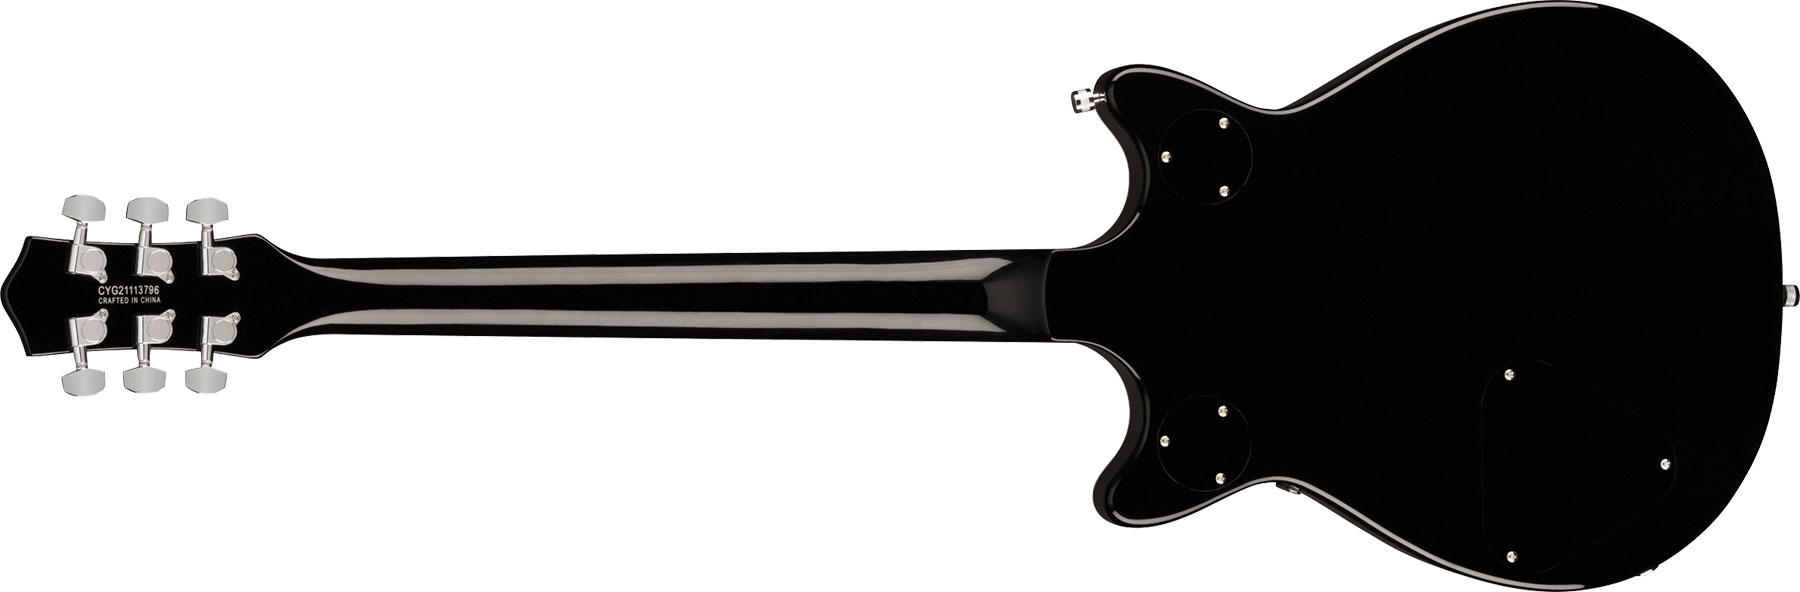 Gretsch G5222 Electromatic Double Jet Bt V-stoptail Hh Ht Lau - Black - Guitarra eléctrica de doble corte. - Variation 1